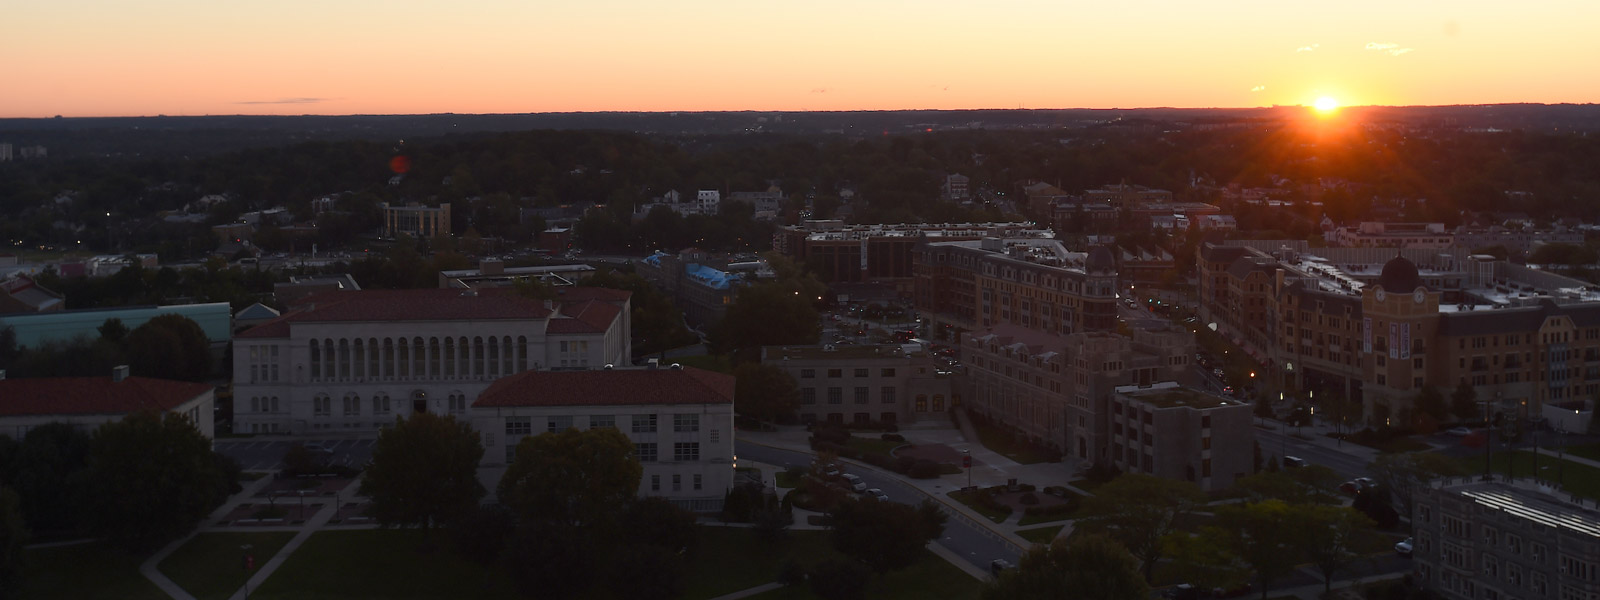 sunrise at Catholic University